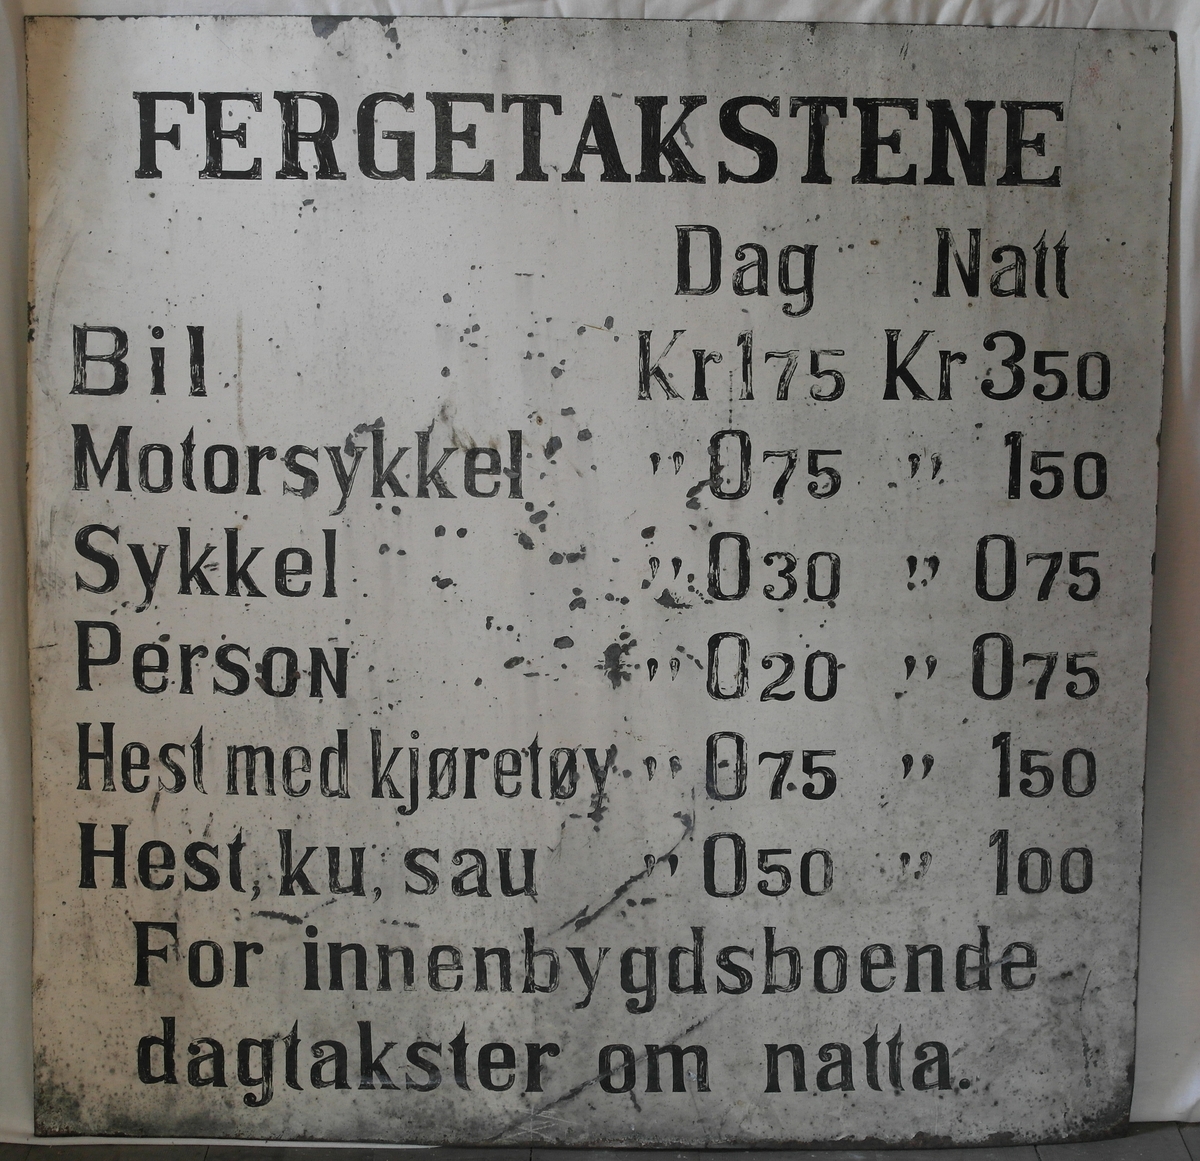 Skilt i blikk, malt med hvit bunn og svart tekst. 
Skiltet gir informasjon om ferjetakster og ble brukt til Skarpeid-ferja, trekkferje som gikk over Trysfjorden i Søgne frem til 1963.